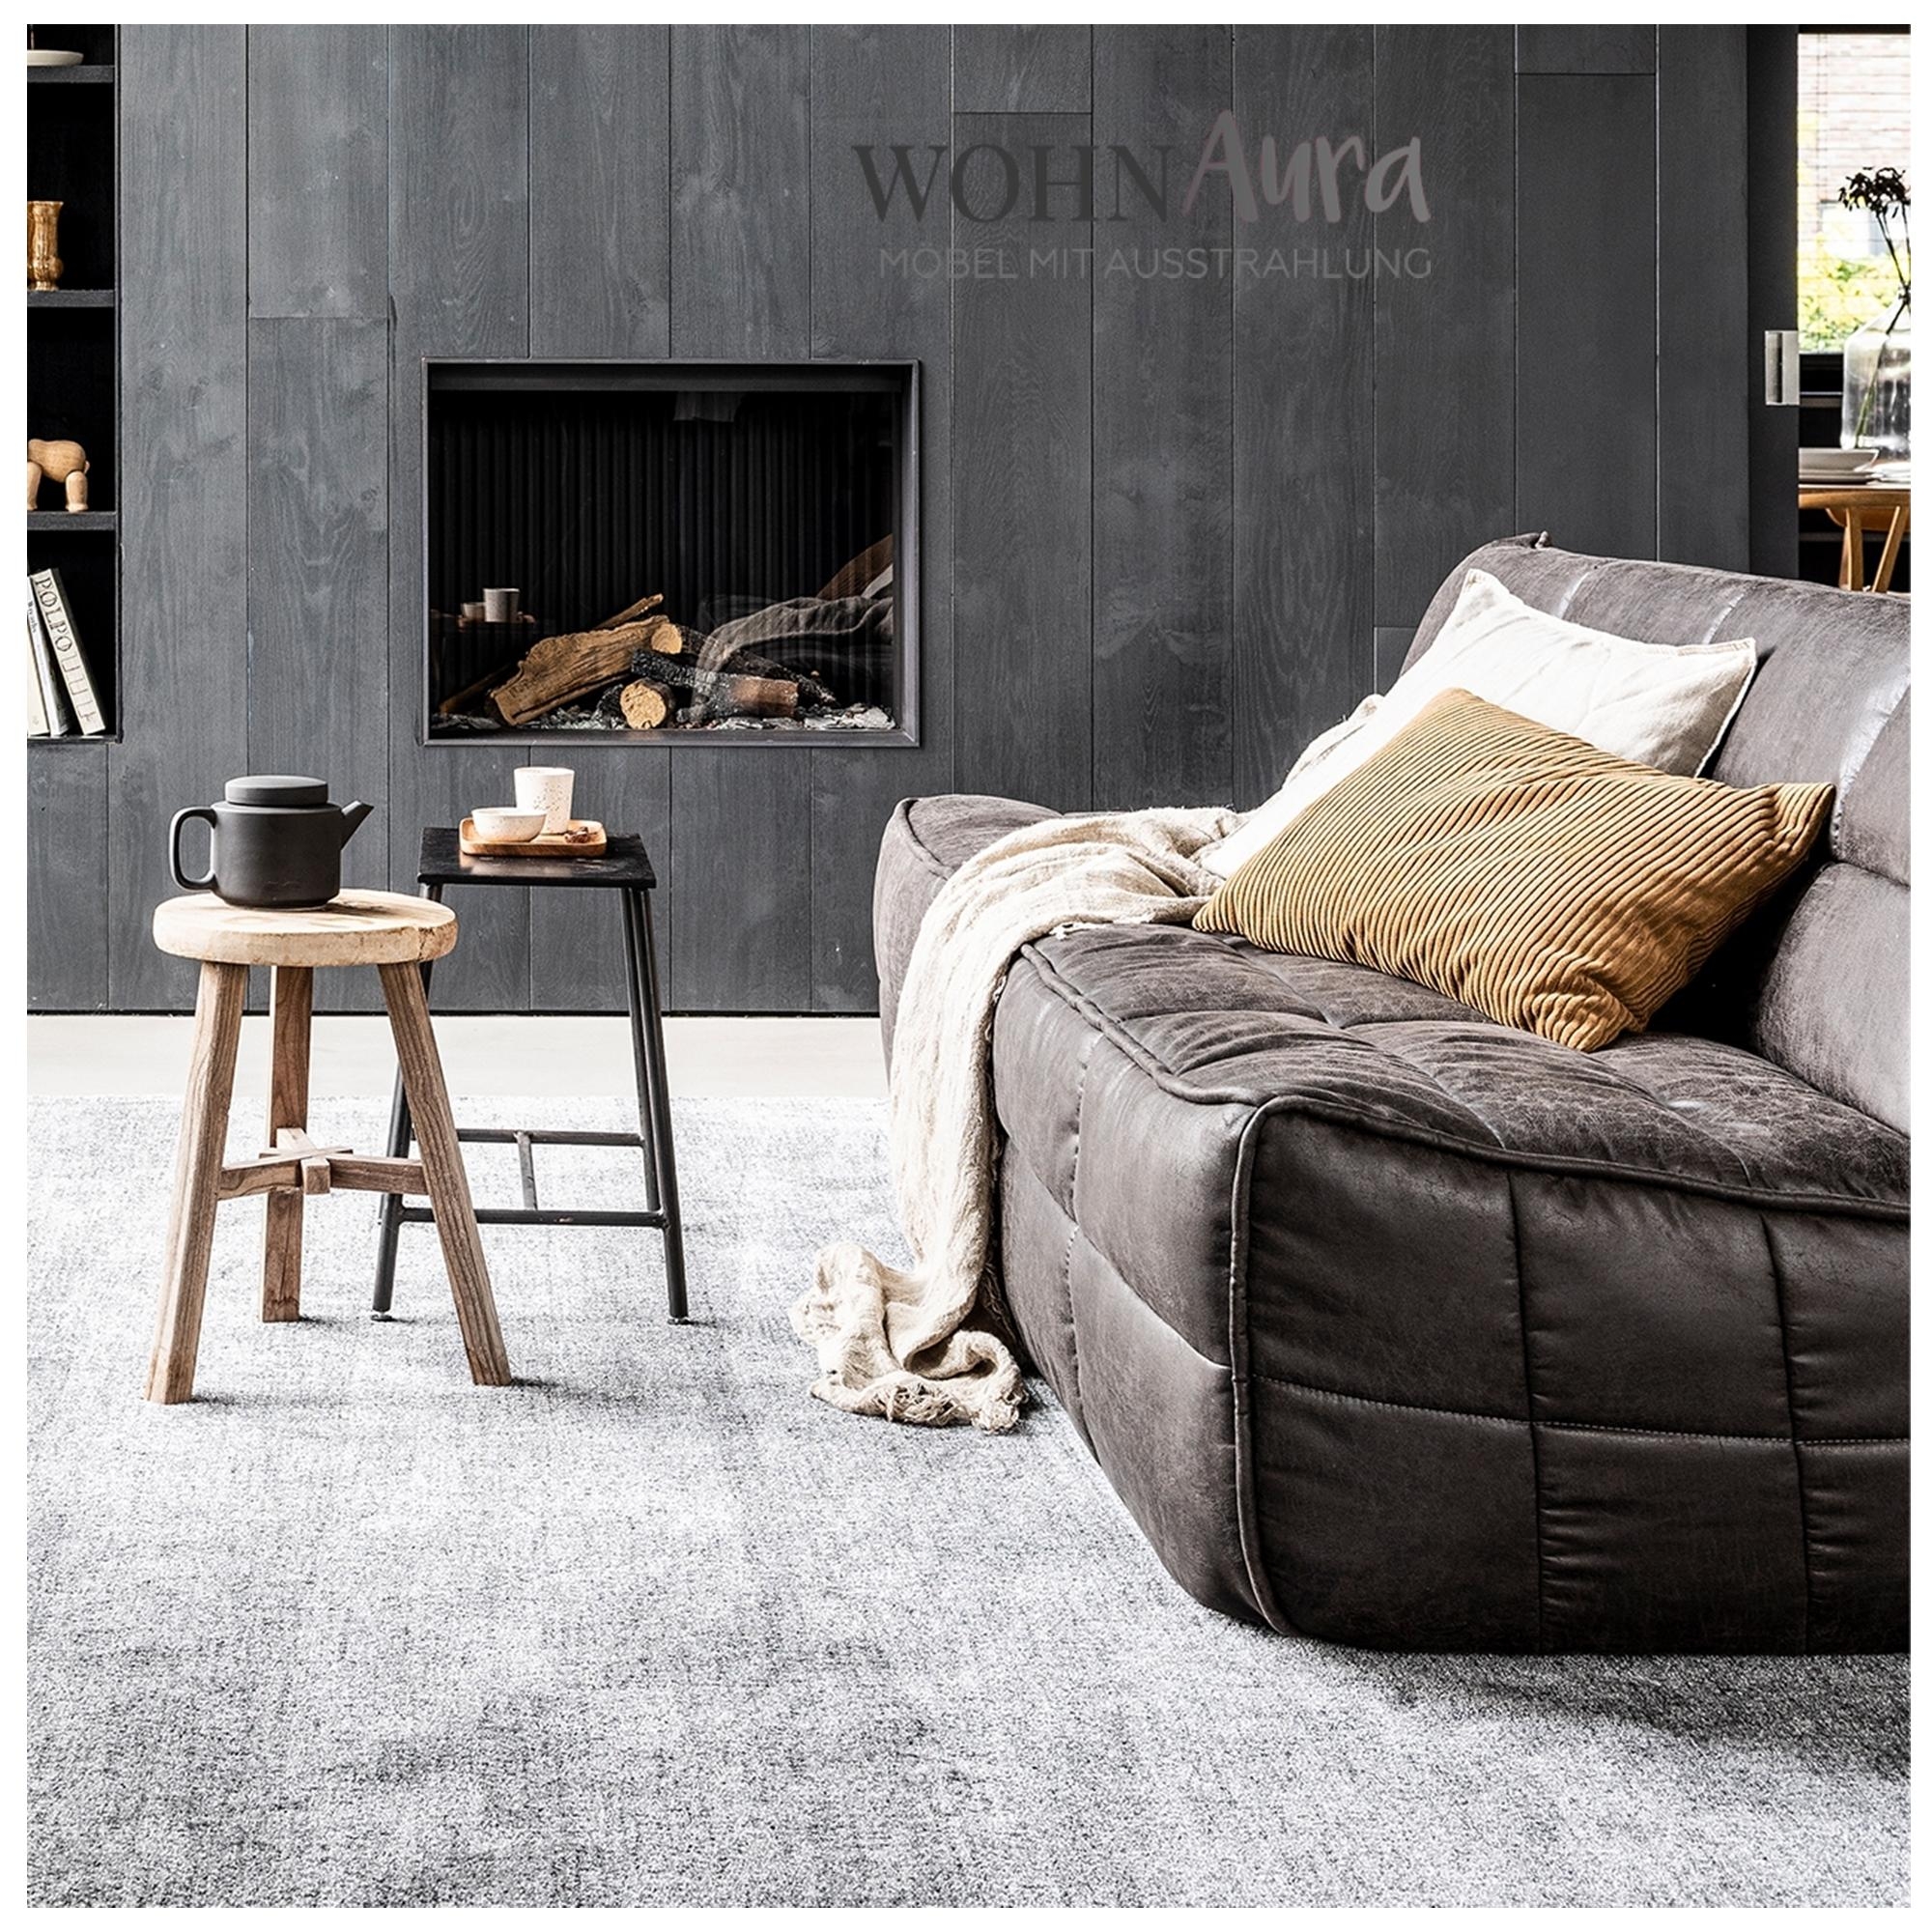 Das Cluster Sofa besticht mit seinen organischen Form, einfach und zugleich äußerst raffiniert.....
#couchliebt #sofa